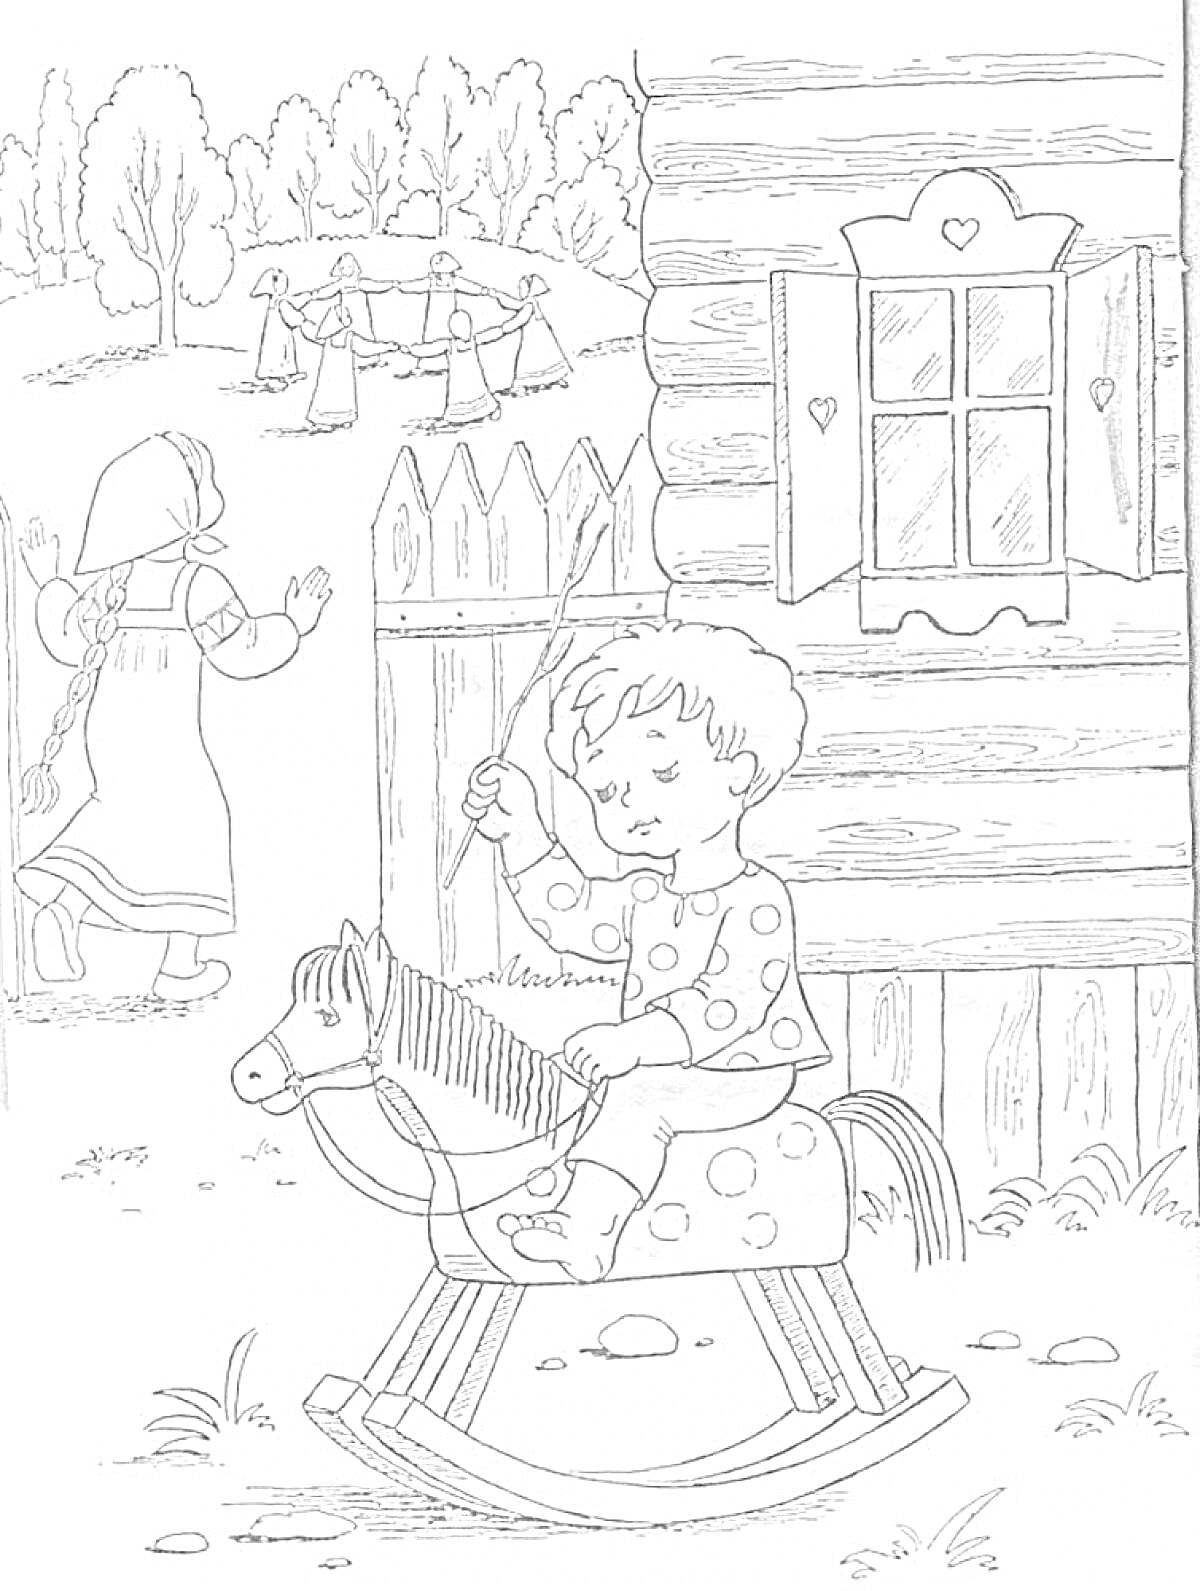 Мальчик на деревянной лошадке, девочка у забора, играющие дети вдали, деревенский дом